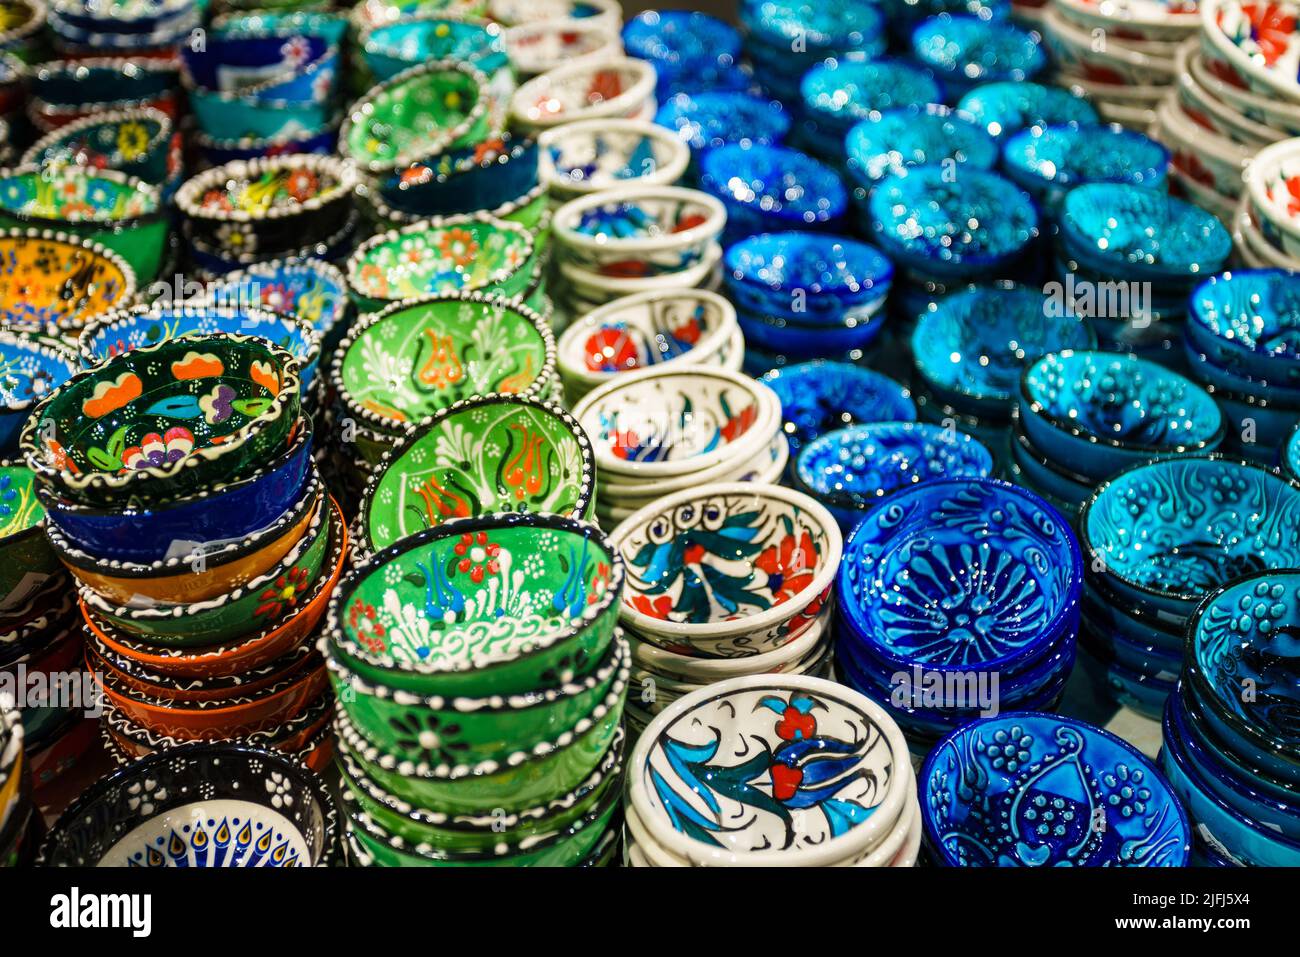 Céramiques turques classiques et traditionnelles colorées sur le Grand Bazar d'Istanbul. Istambul, Turquie Banque D'Images